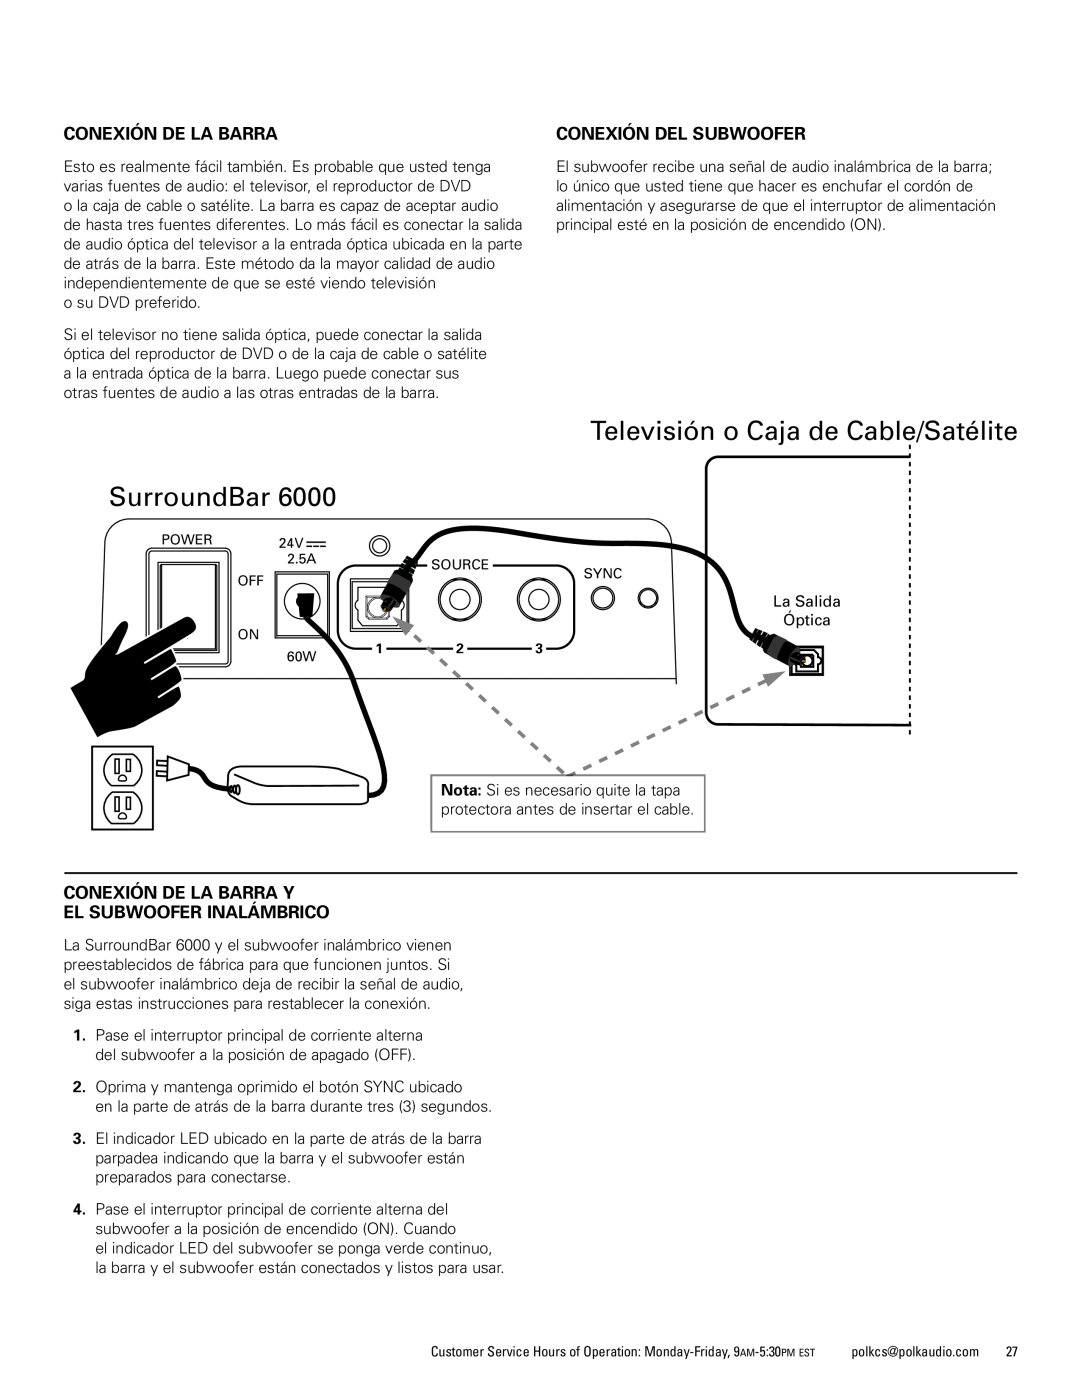 Polk Audio AM1600-A manual Televisión o Caja de Cable/Satélite SurroundBar, Conexión De La Barra, Conexión Del Subwoofer 